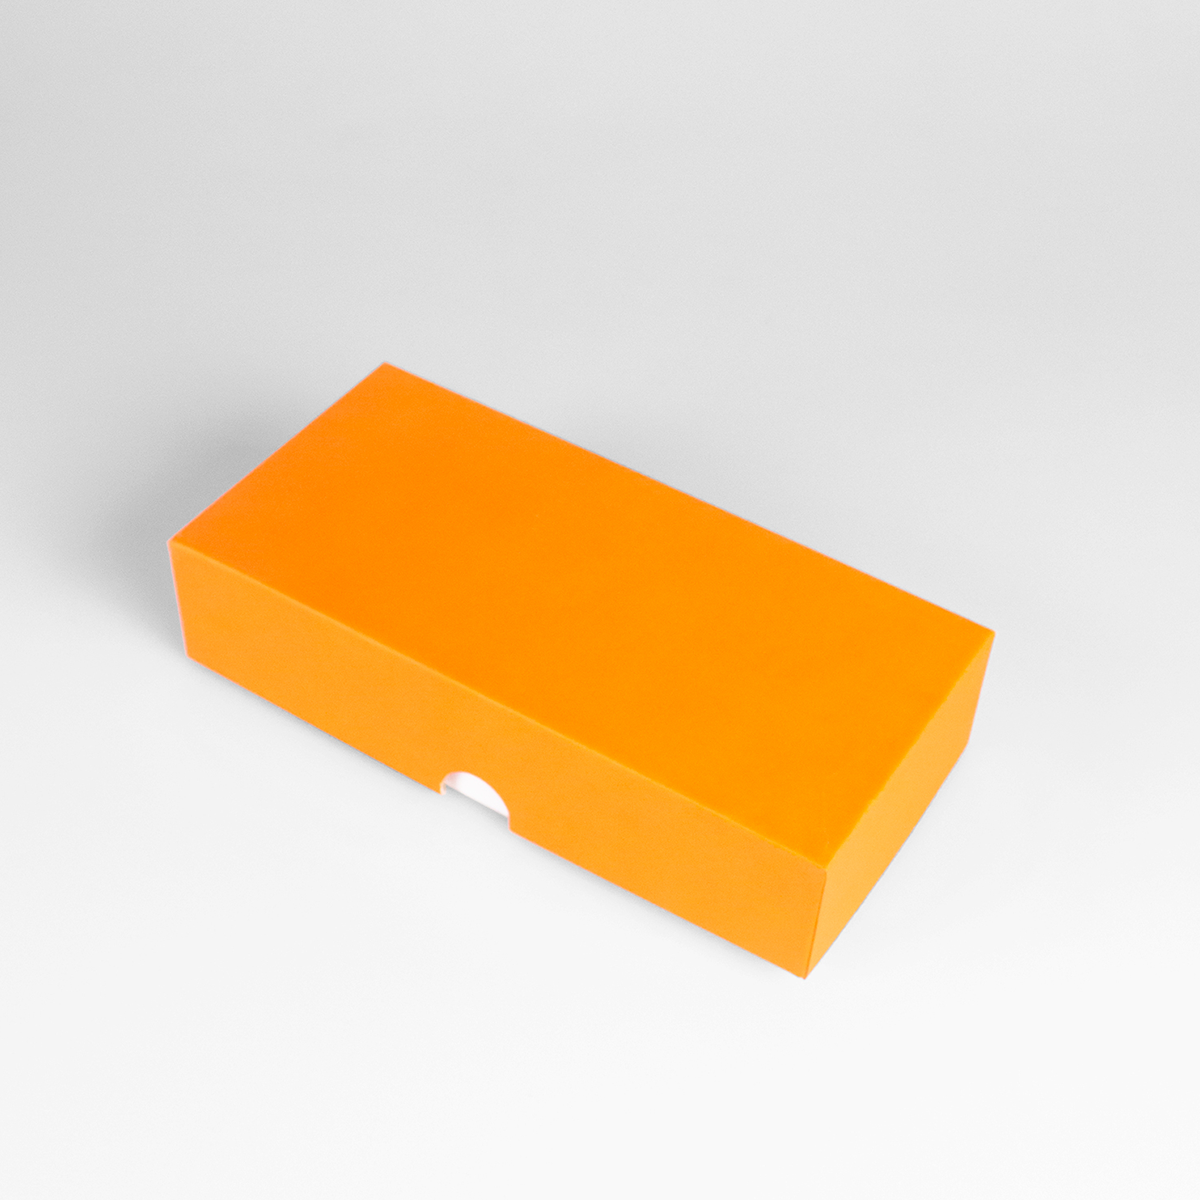 Подарочная коробка крышка-дно, 21.5 x 10.5 x 5 см. "Радуга", оранжевый, белый